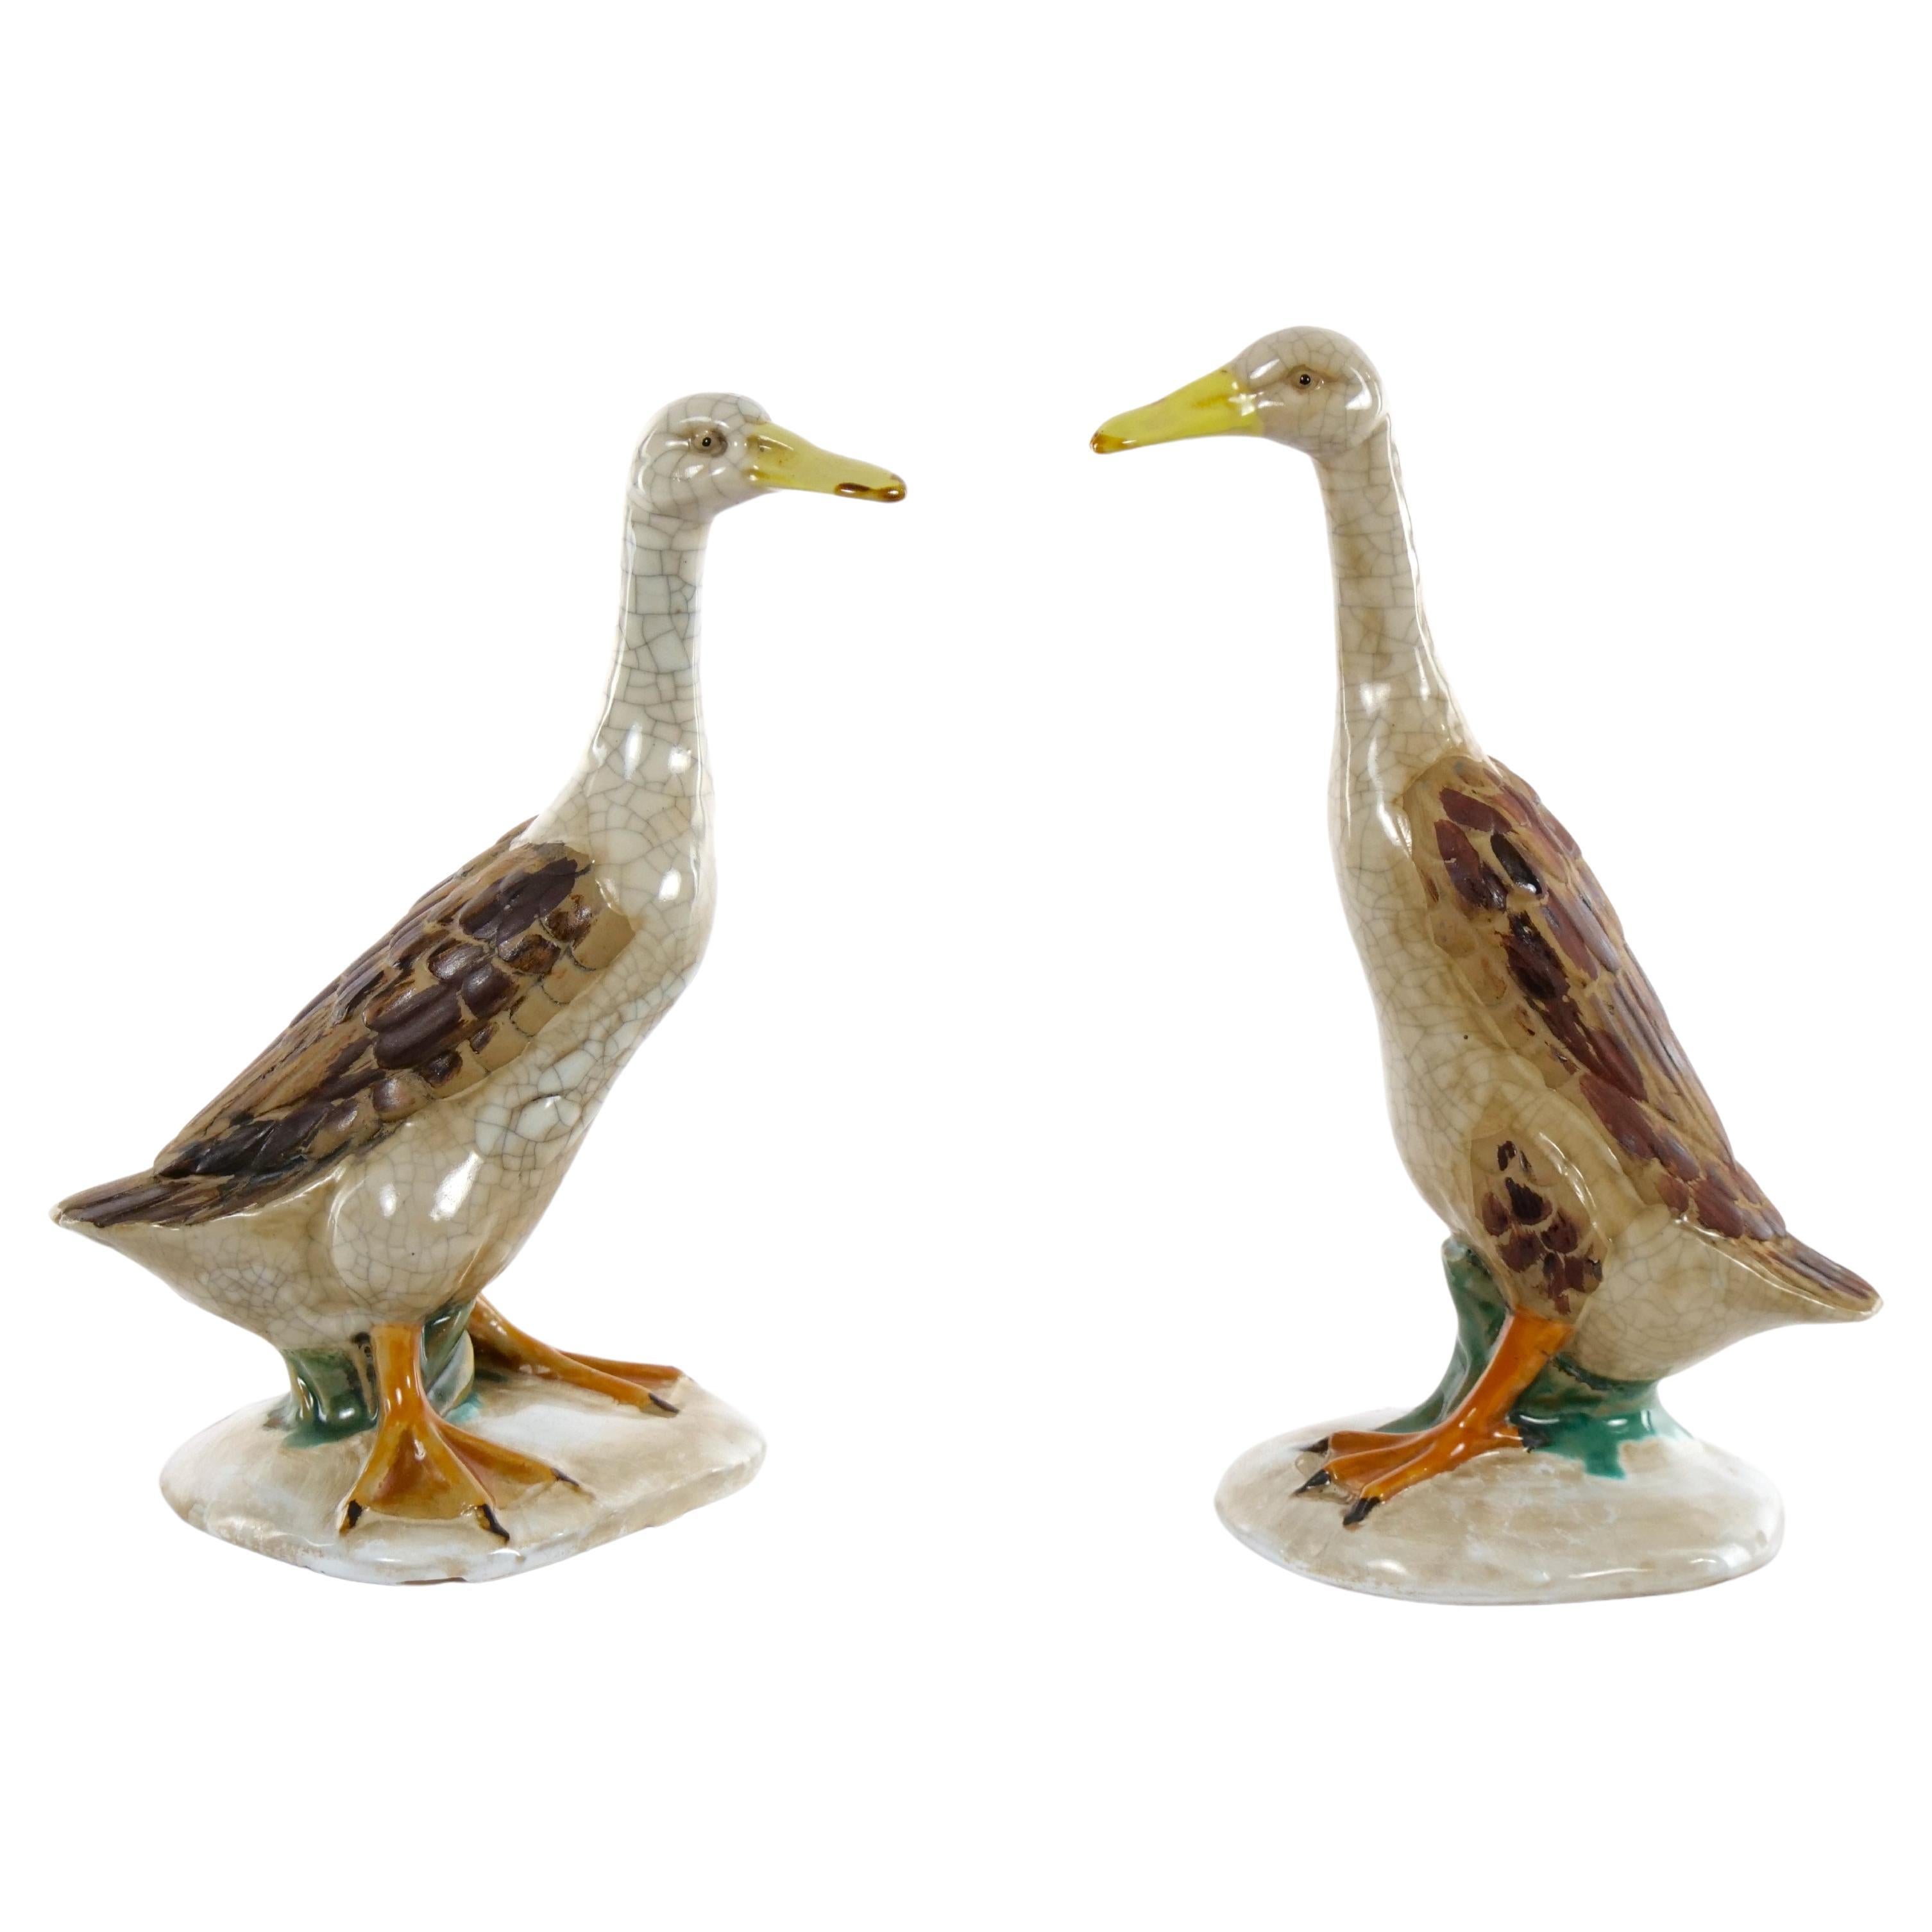 Grande paire de statues de canards en porcelaine anglaise émaillée / terre cuite